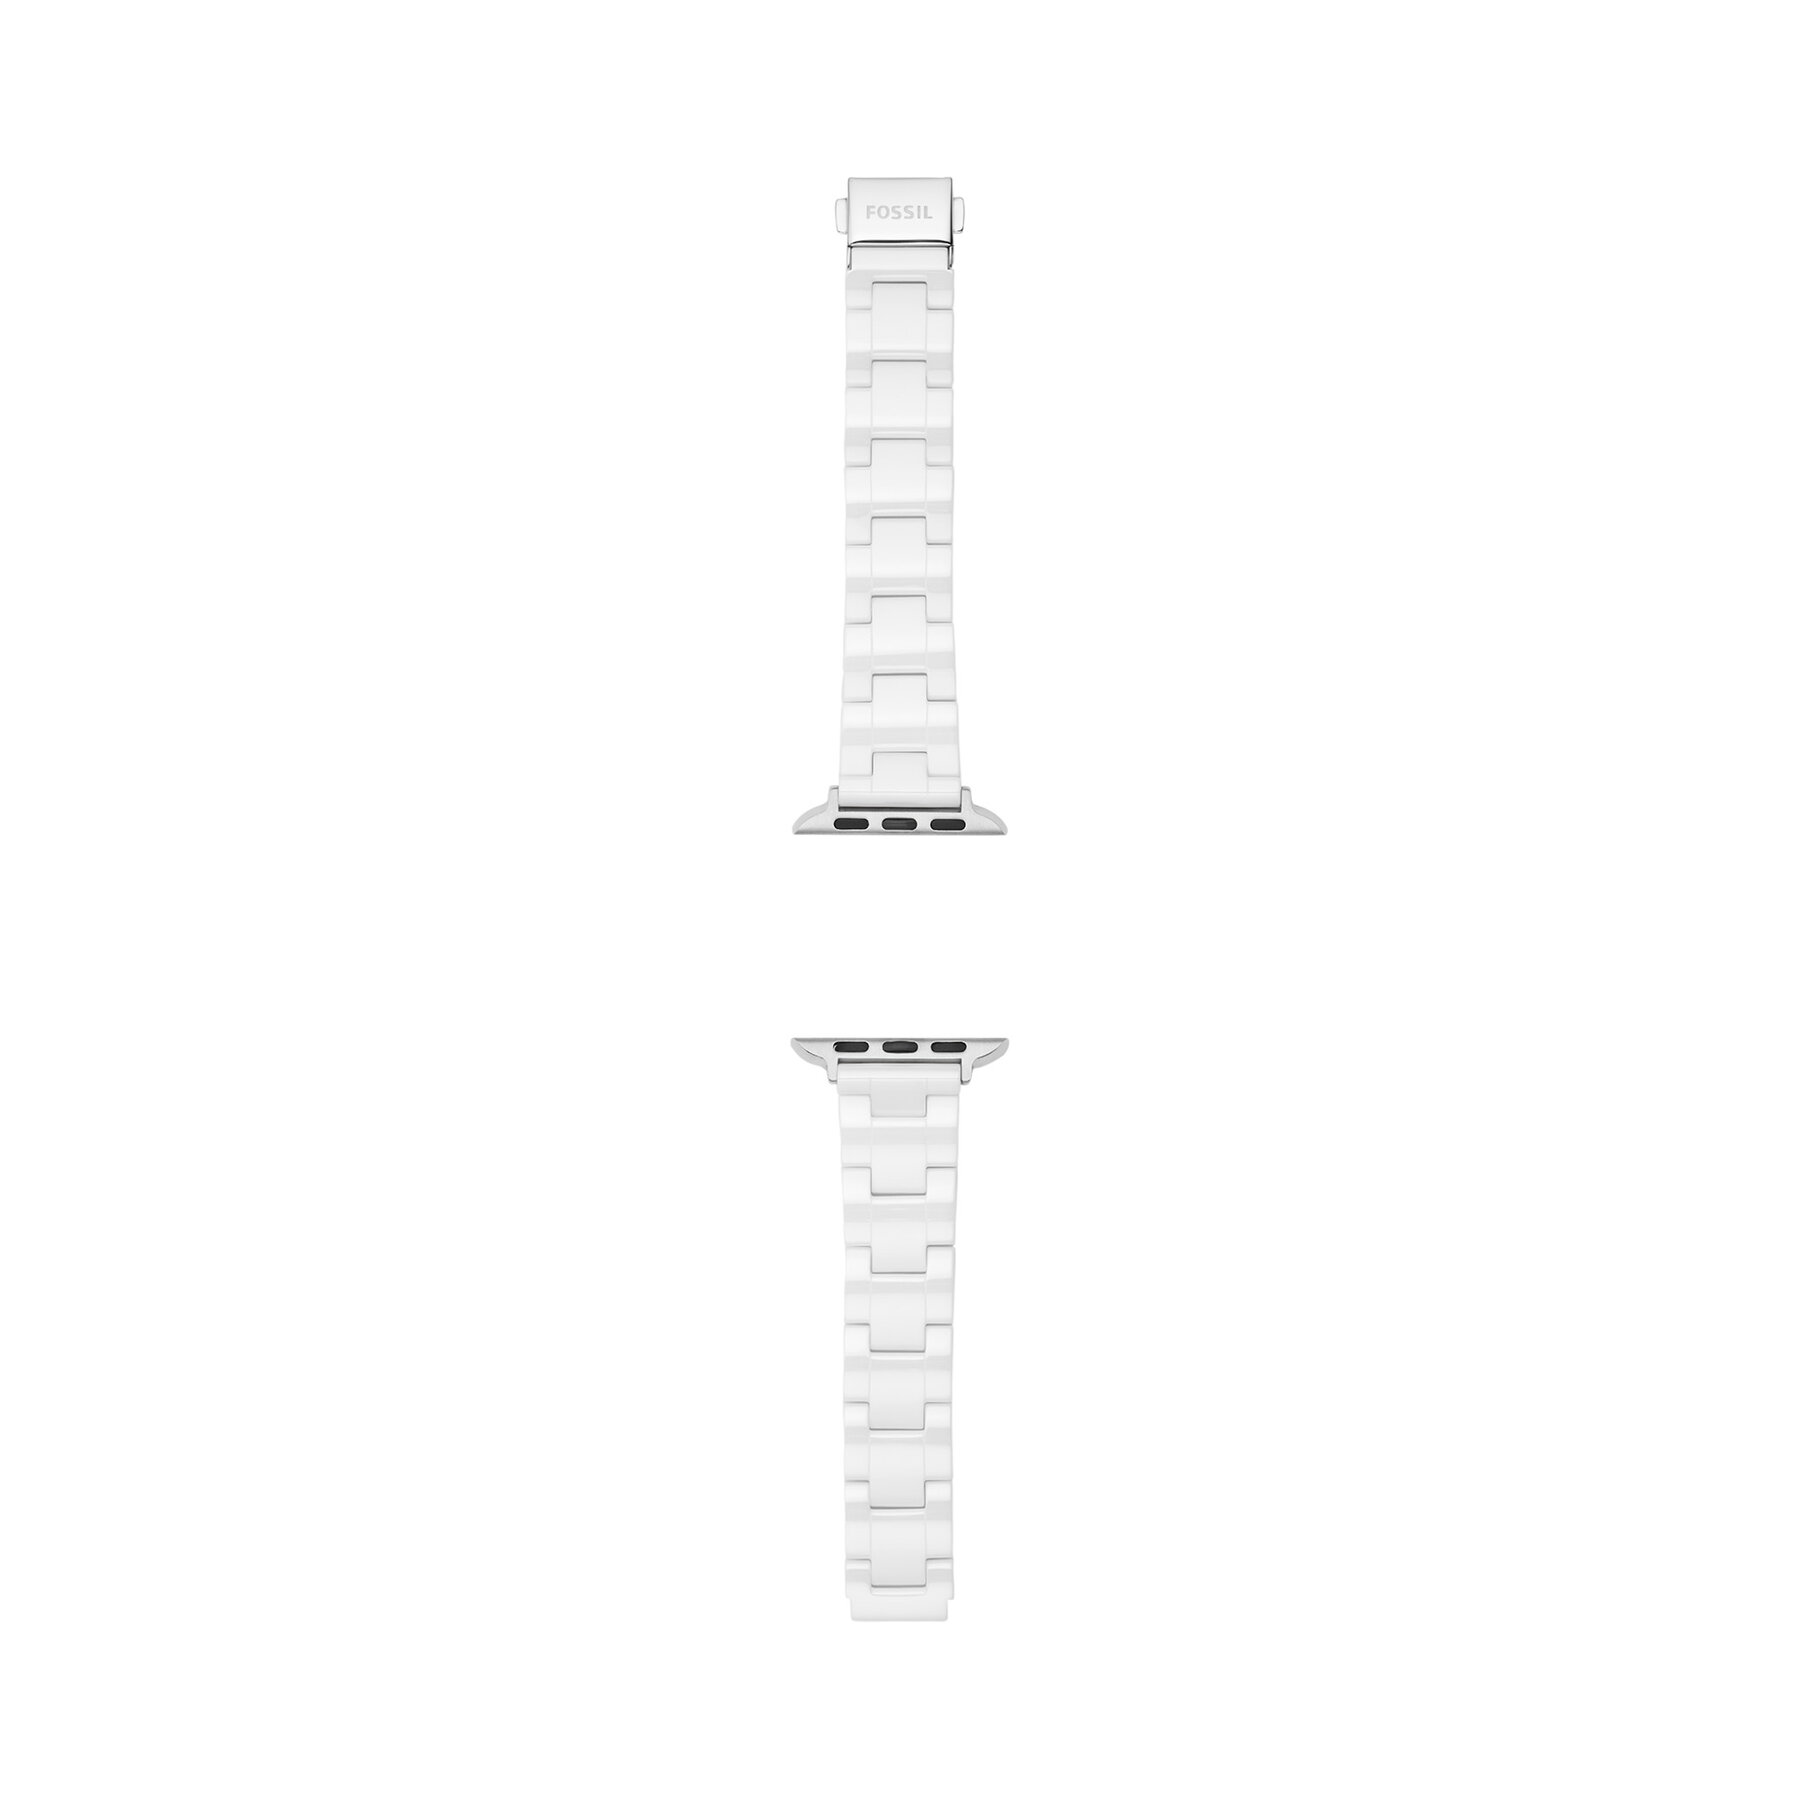 Vyměnitelný pásek do hodinek Apple Watch Fossil S380005 Silver